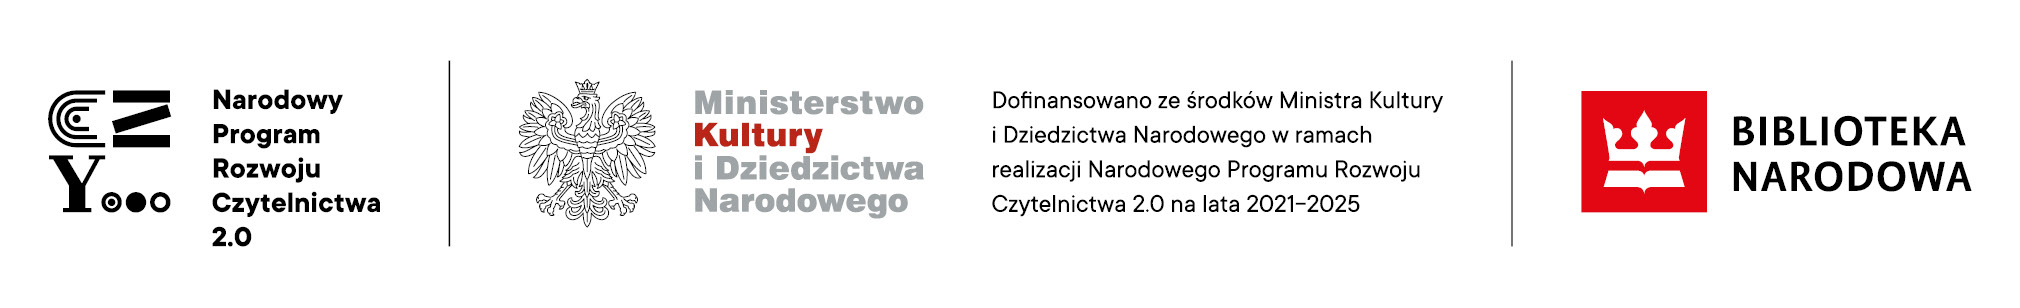 Logo Narodowy program Rozwoju czytelnictwa 2.0